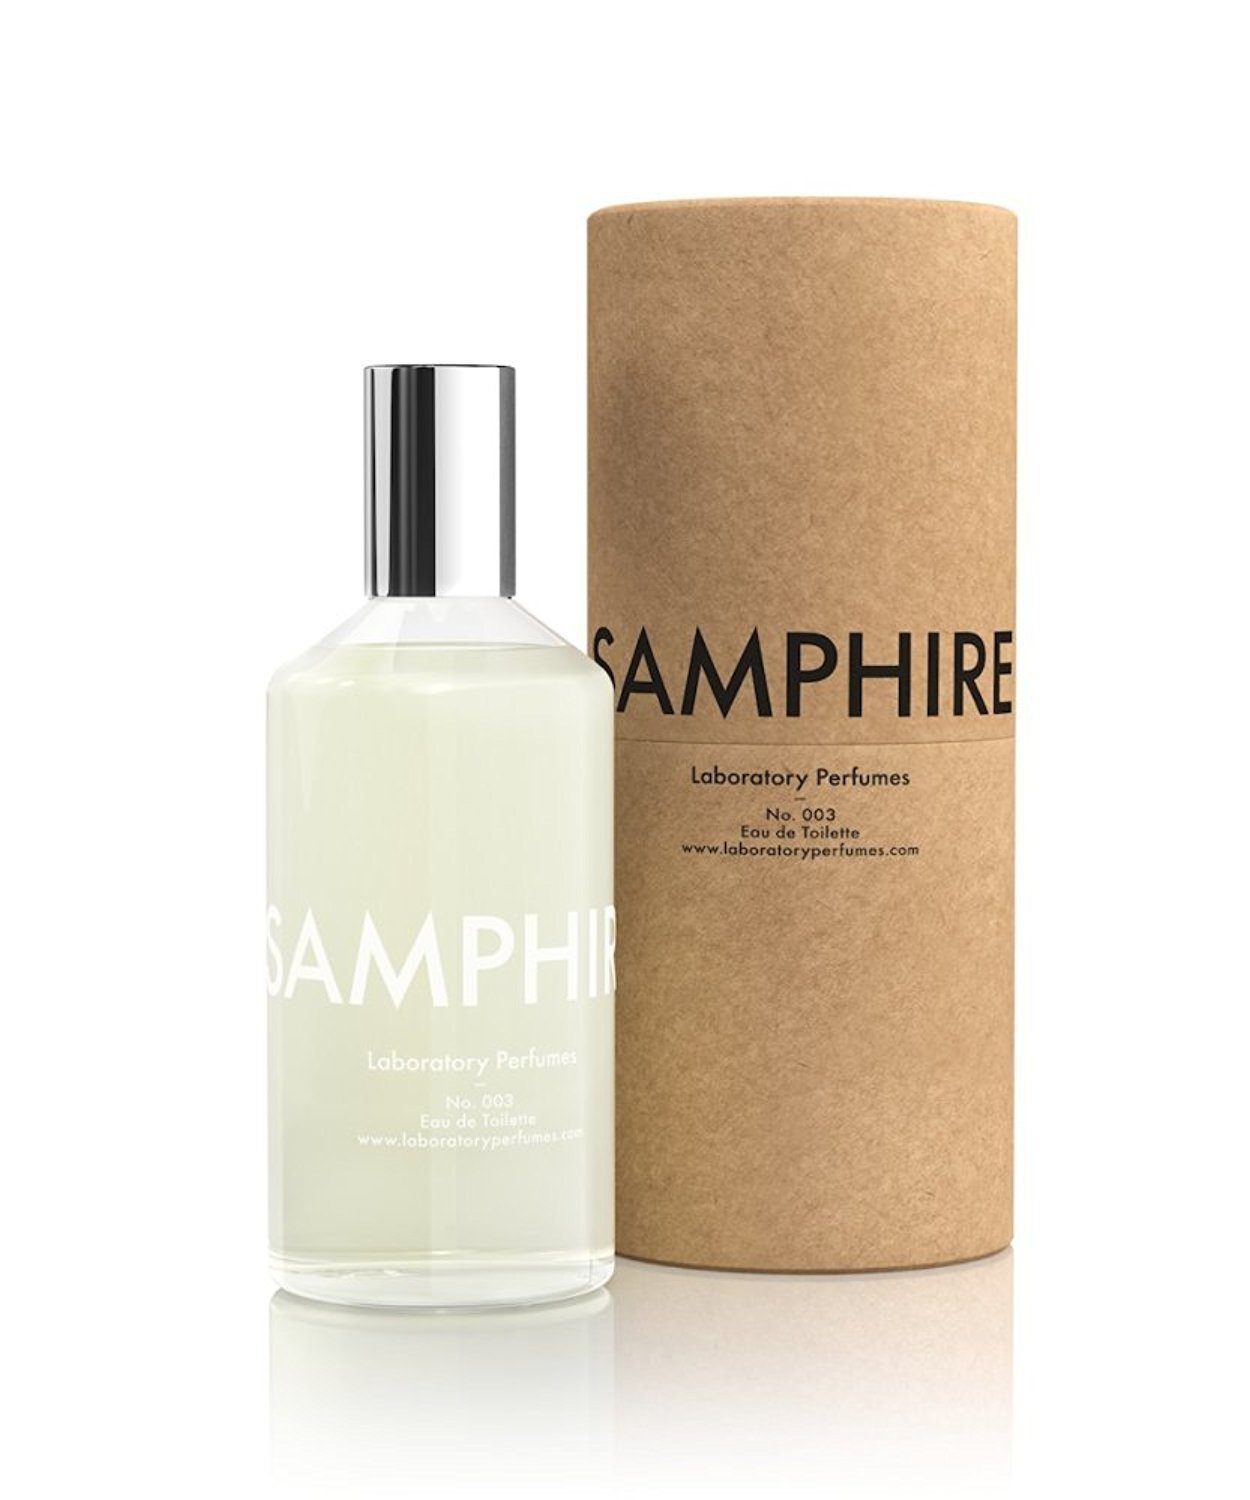 Laboratory Perfumes, Samphire Eau De Toilette, - Placewares